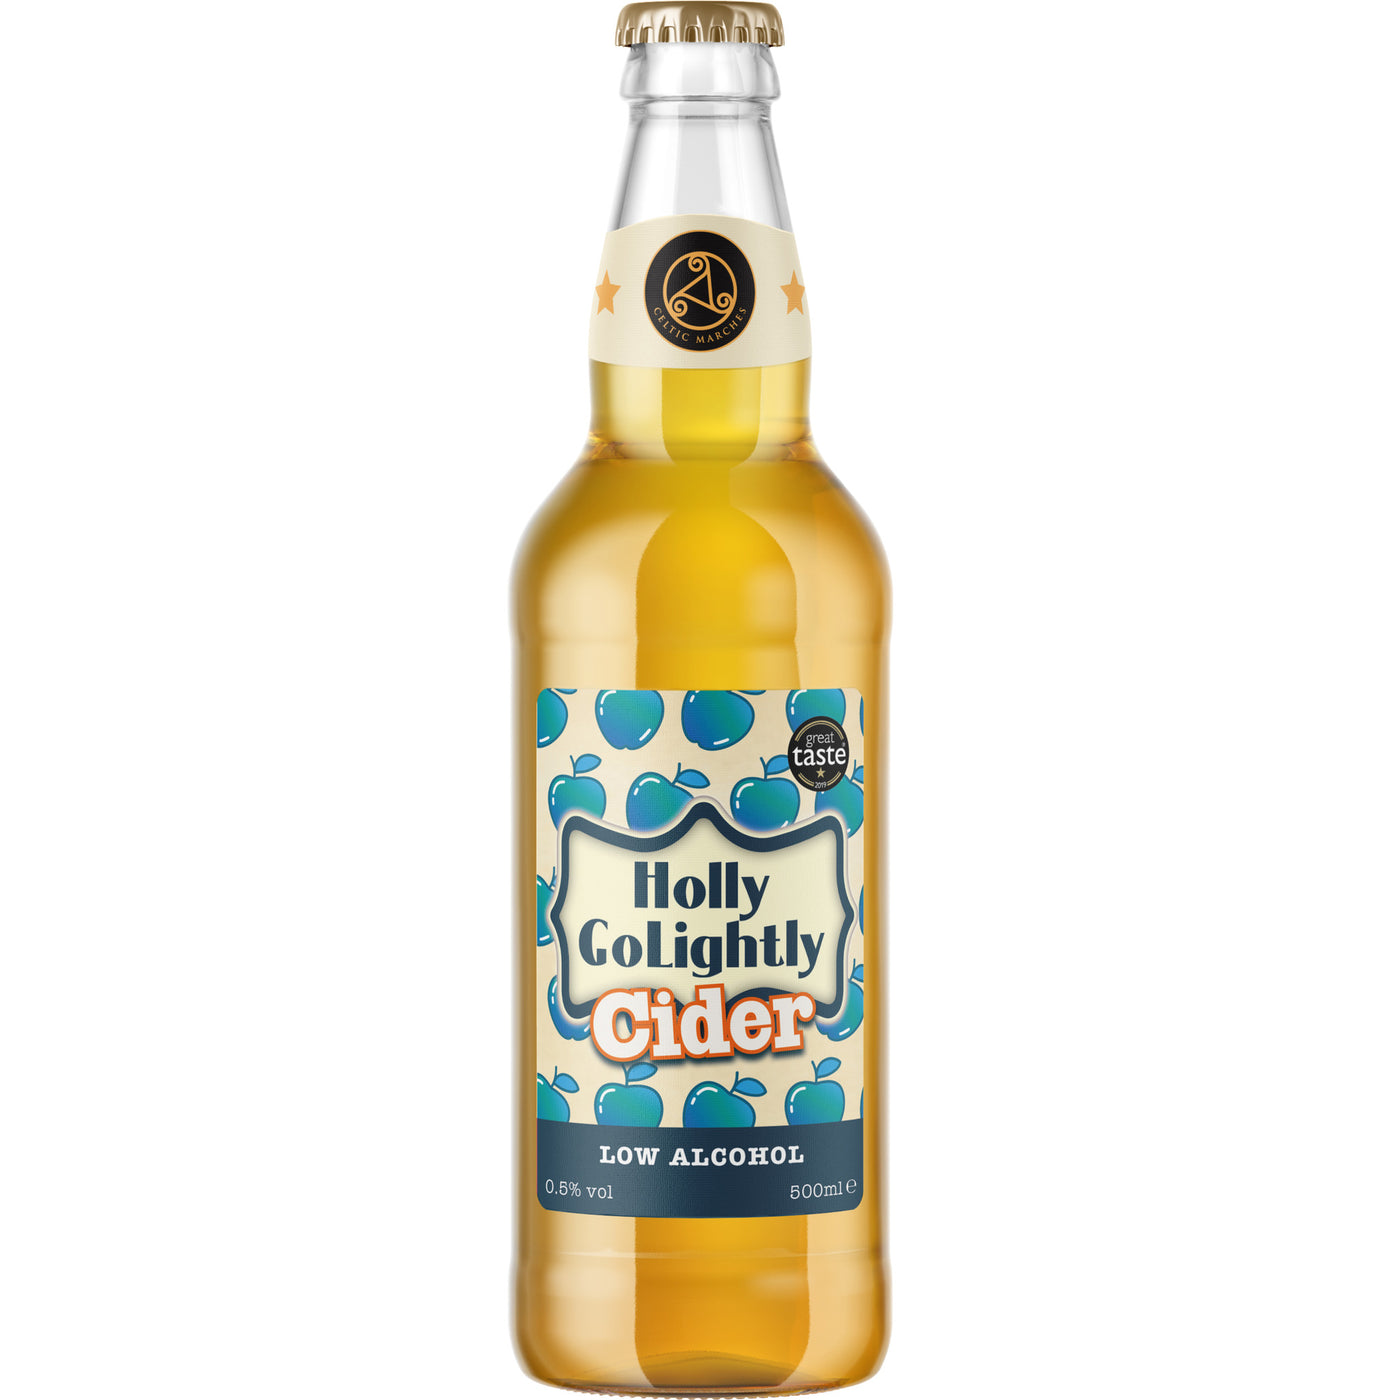 Holly GoLightly Cider